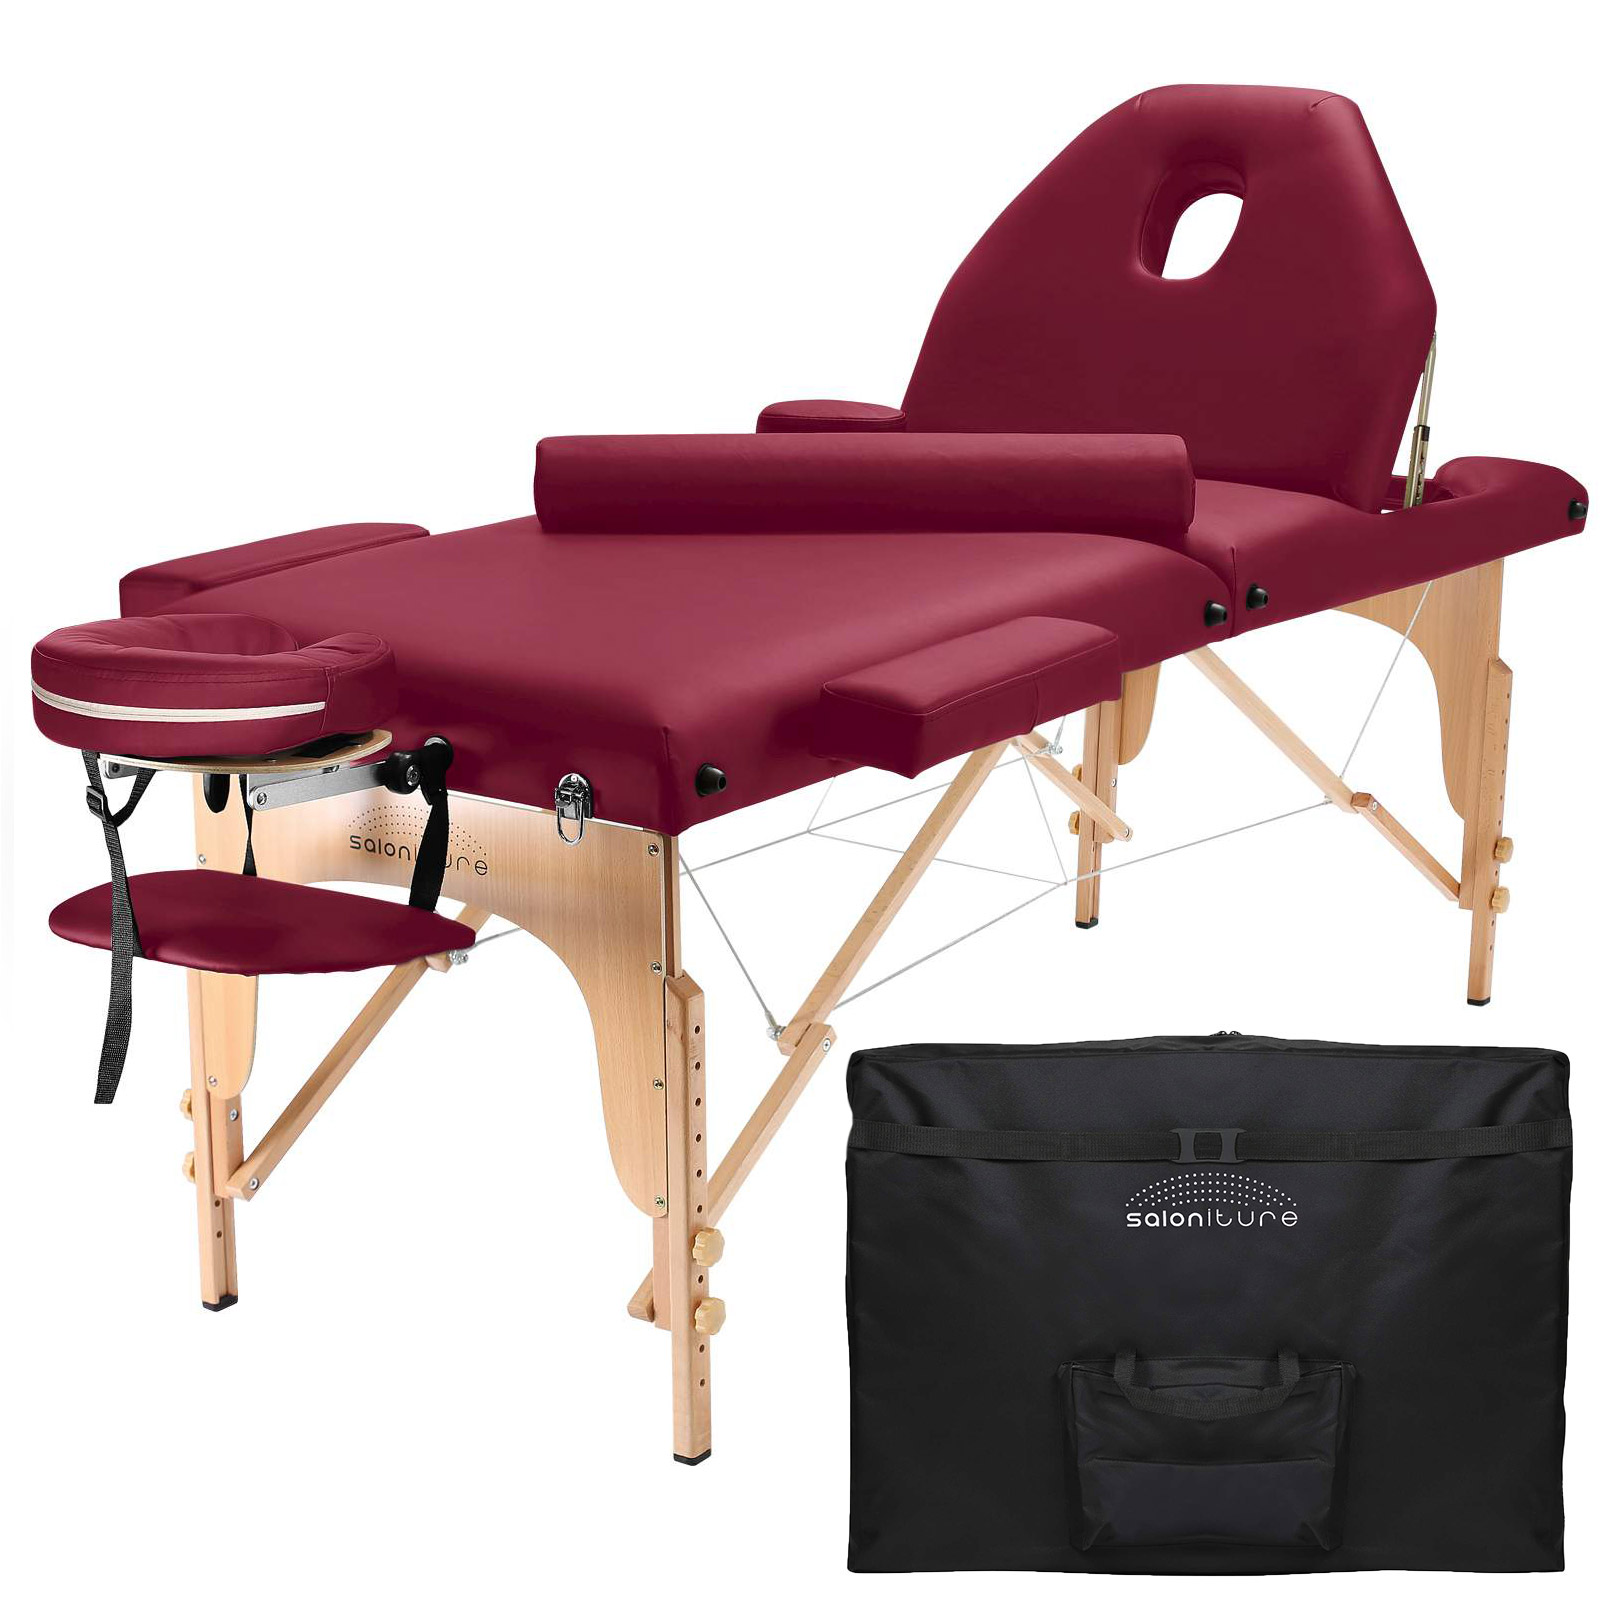 Saloniture Portable Burgundy Massage Table with Bolster and Tilt Backrest